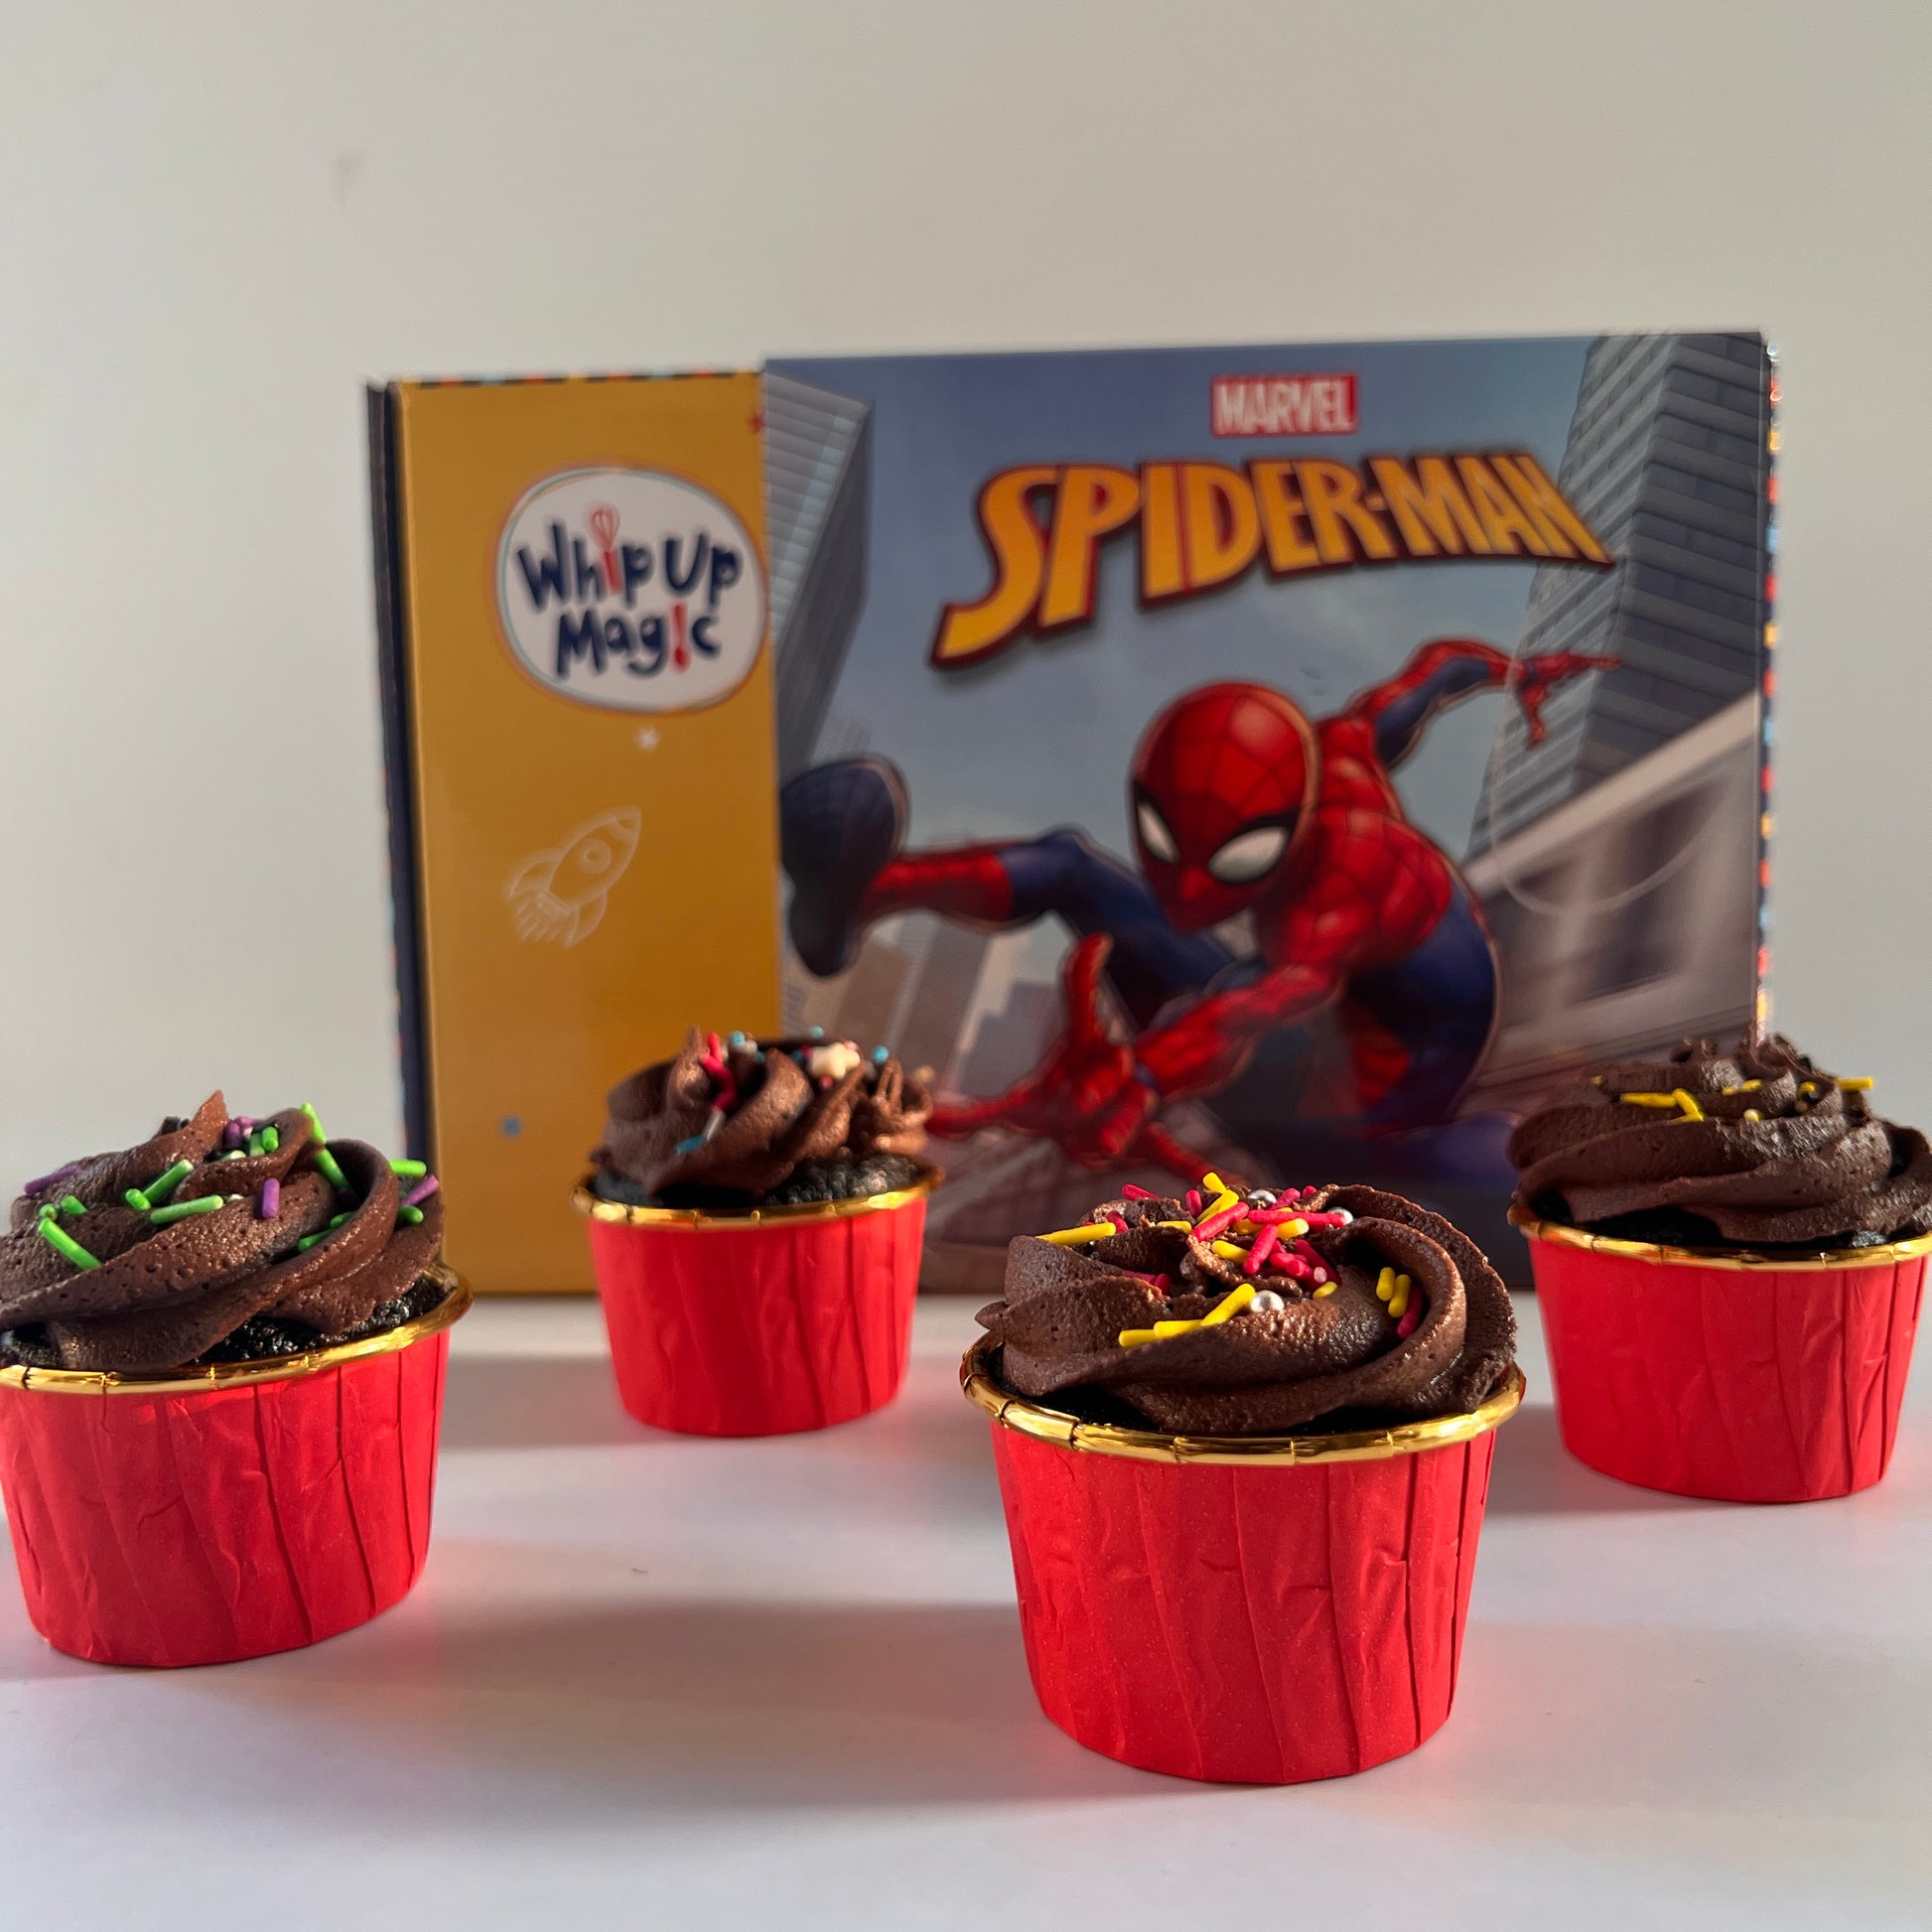 Spider-Man Themed Cupcake Making Kit WhipUpMagic